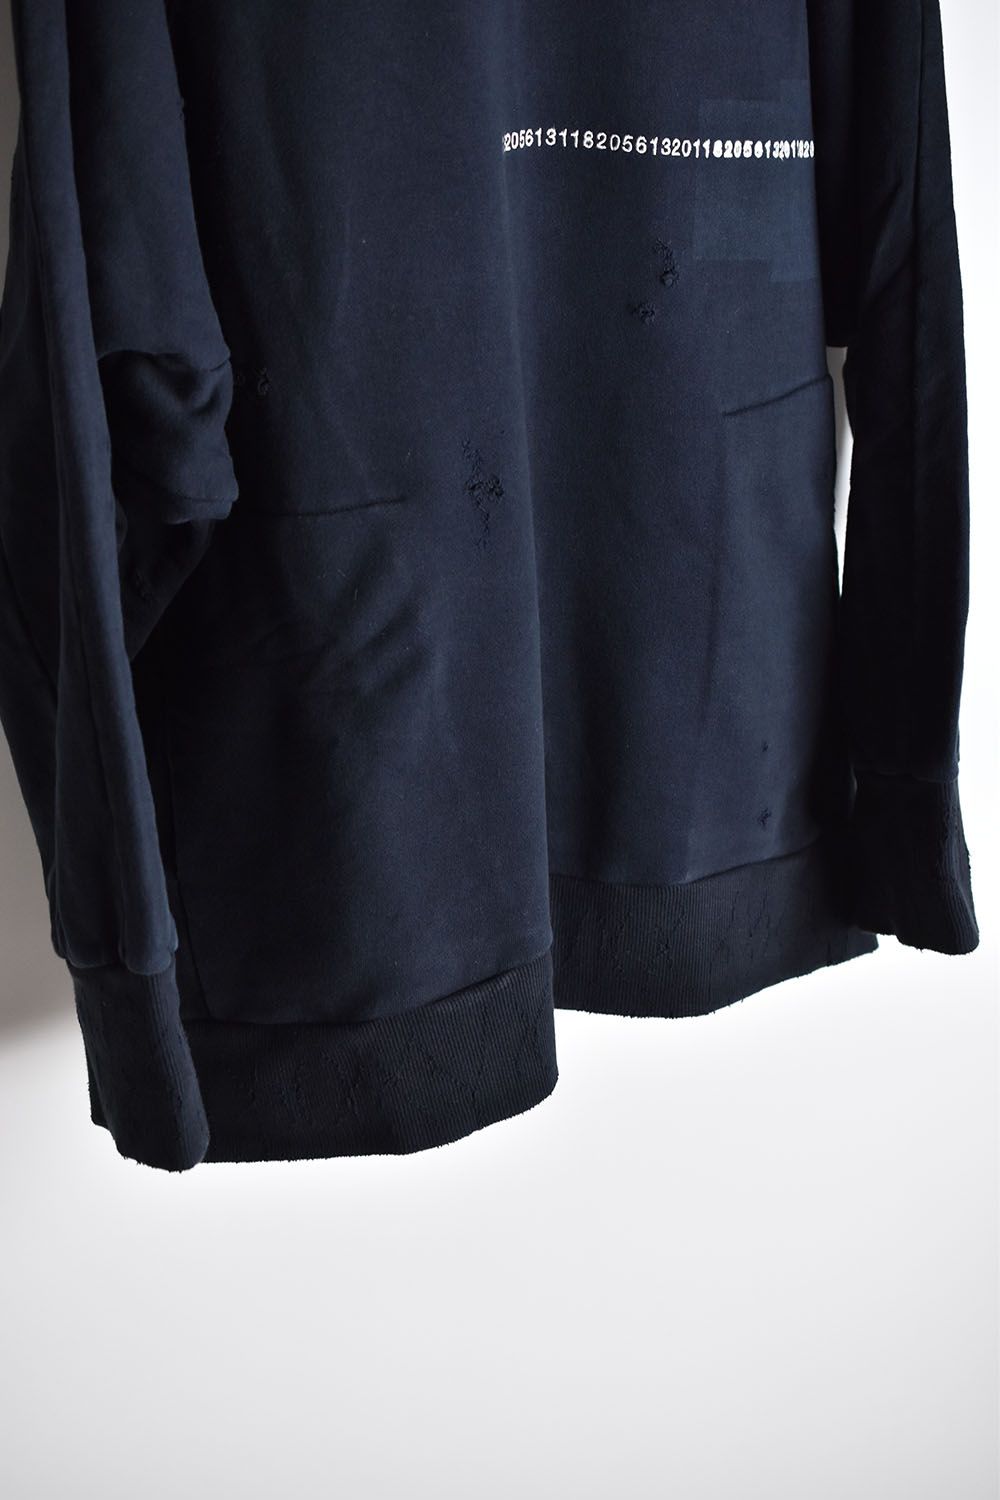 Damage Sweat Over Sized Pullover"Black"/ ダメージスウェットオーバーサイズドプルオーバー"ブラック"